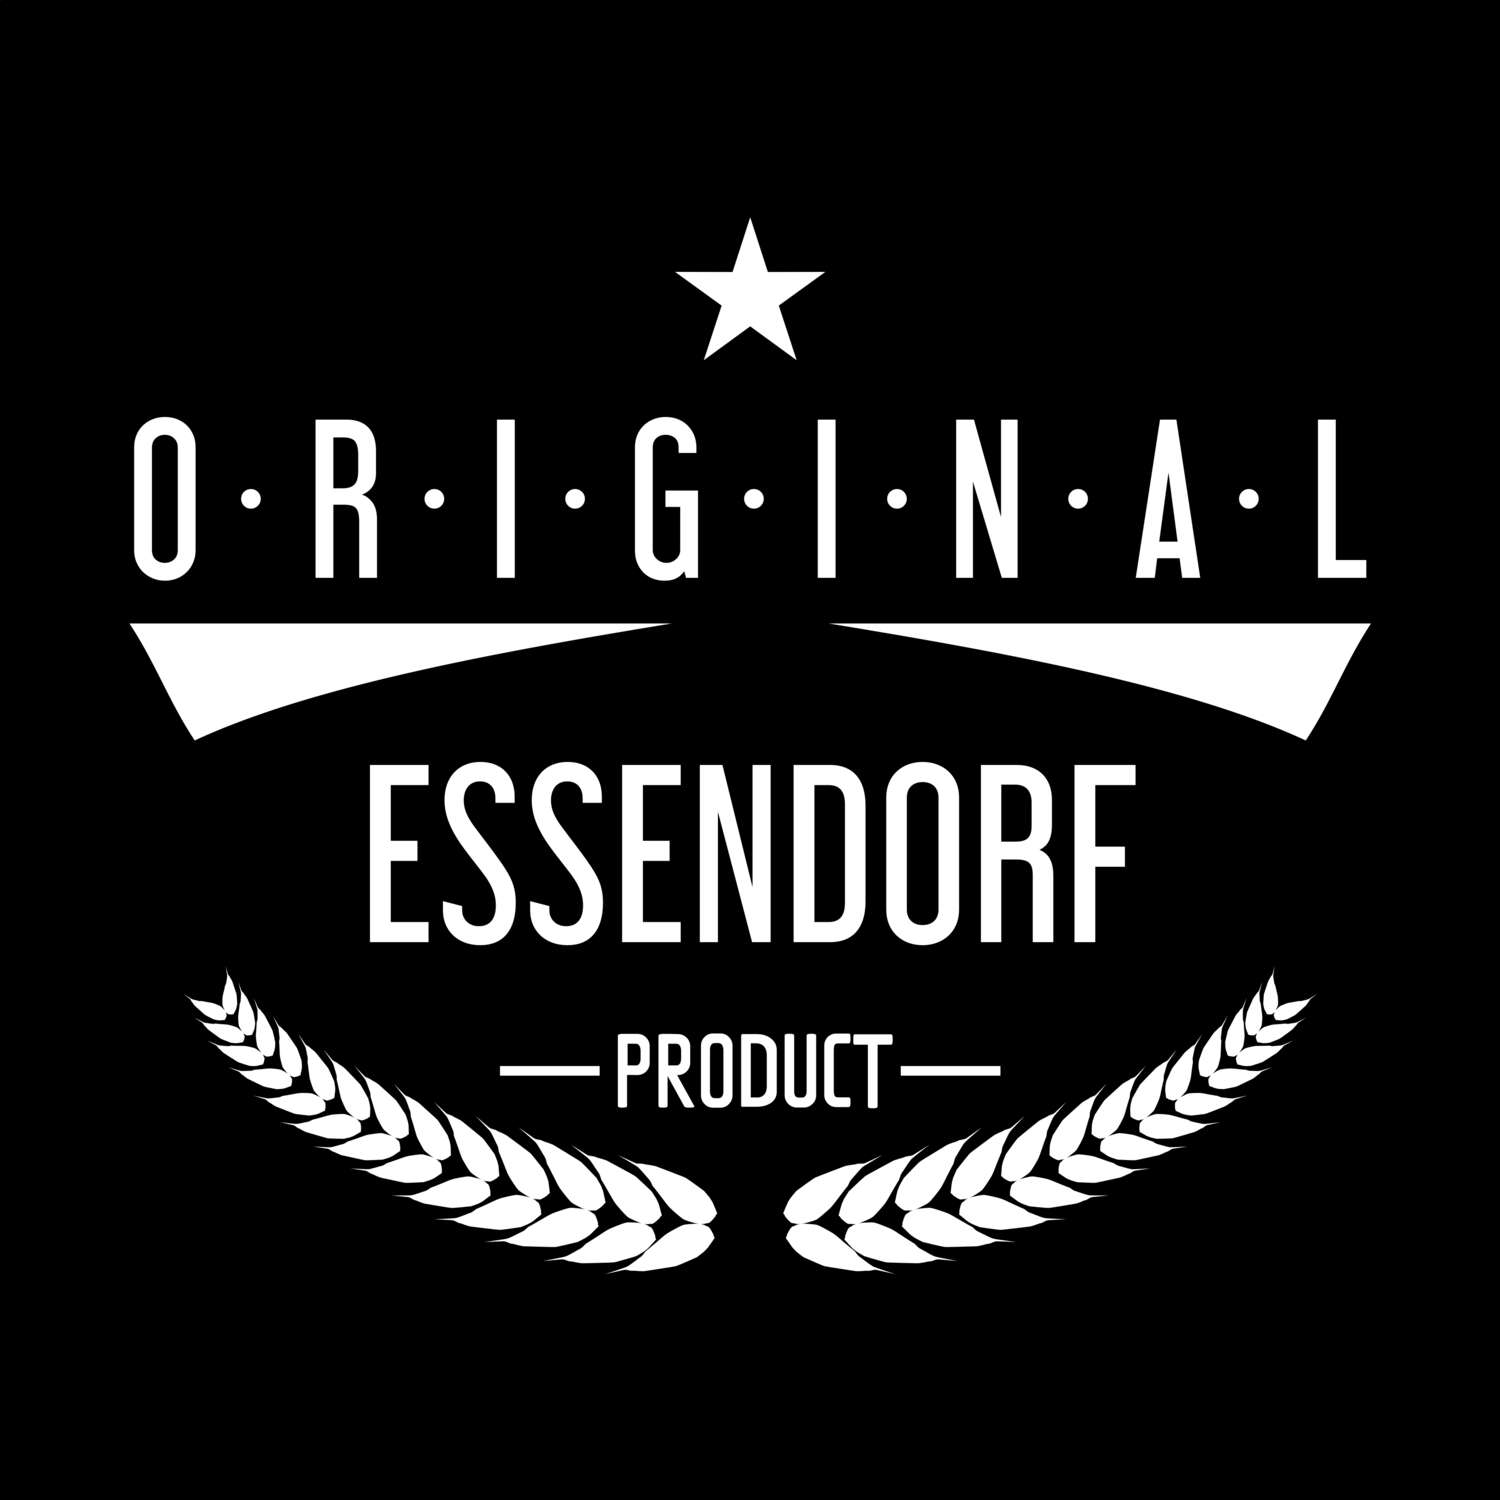 Essendorf T-Shirt »Original Product«